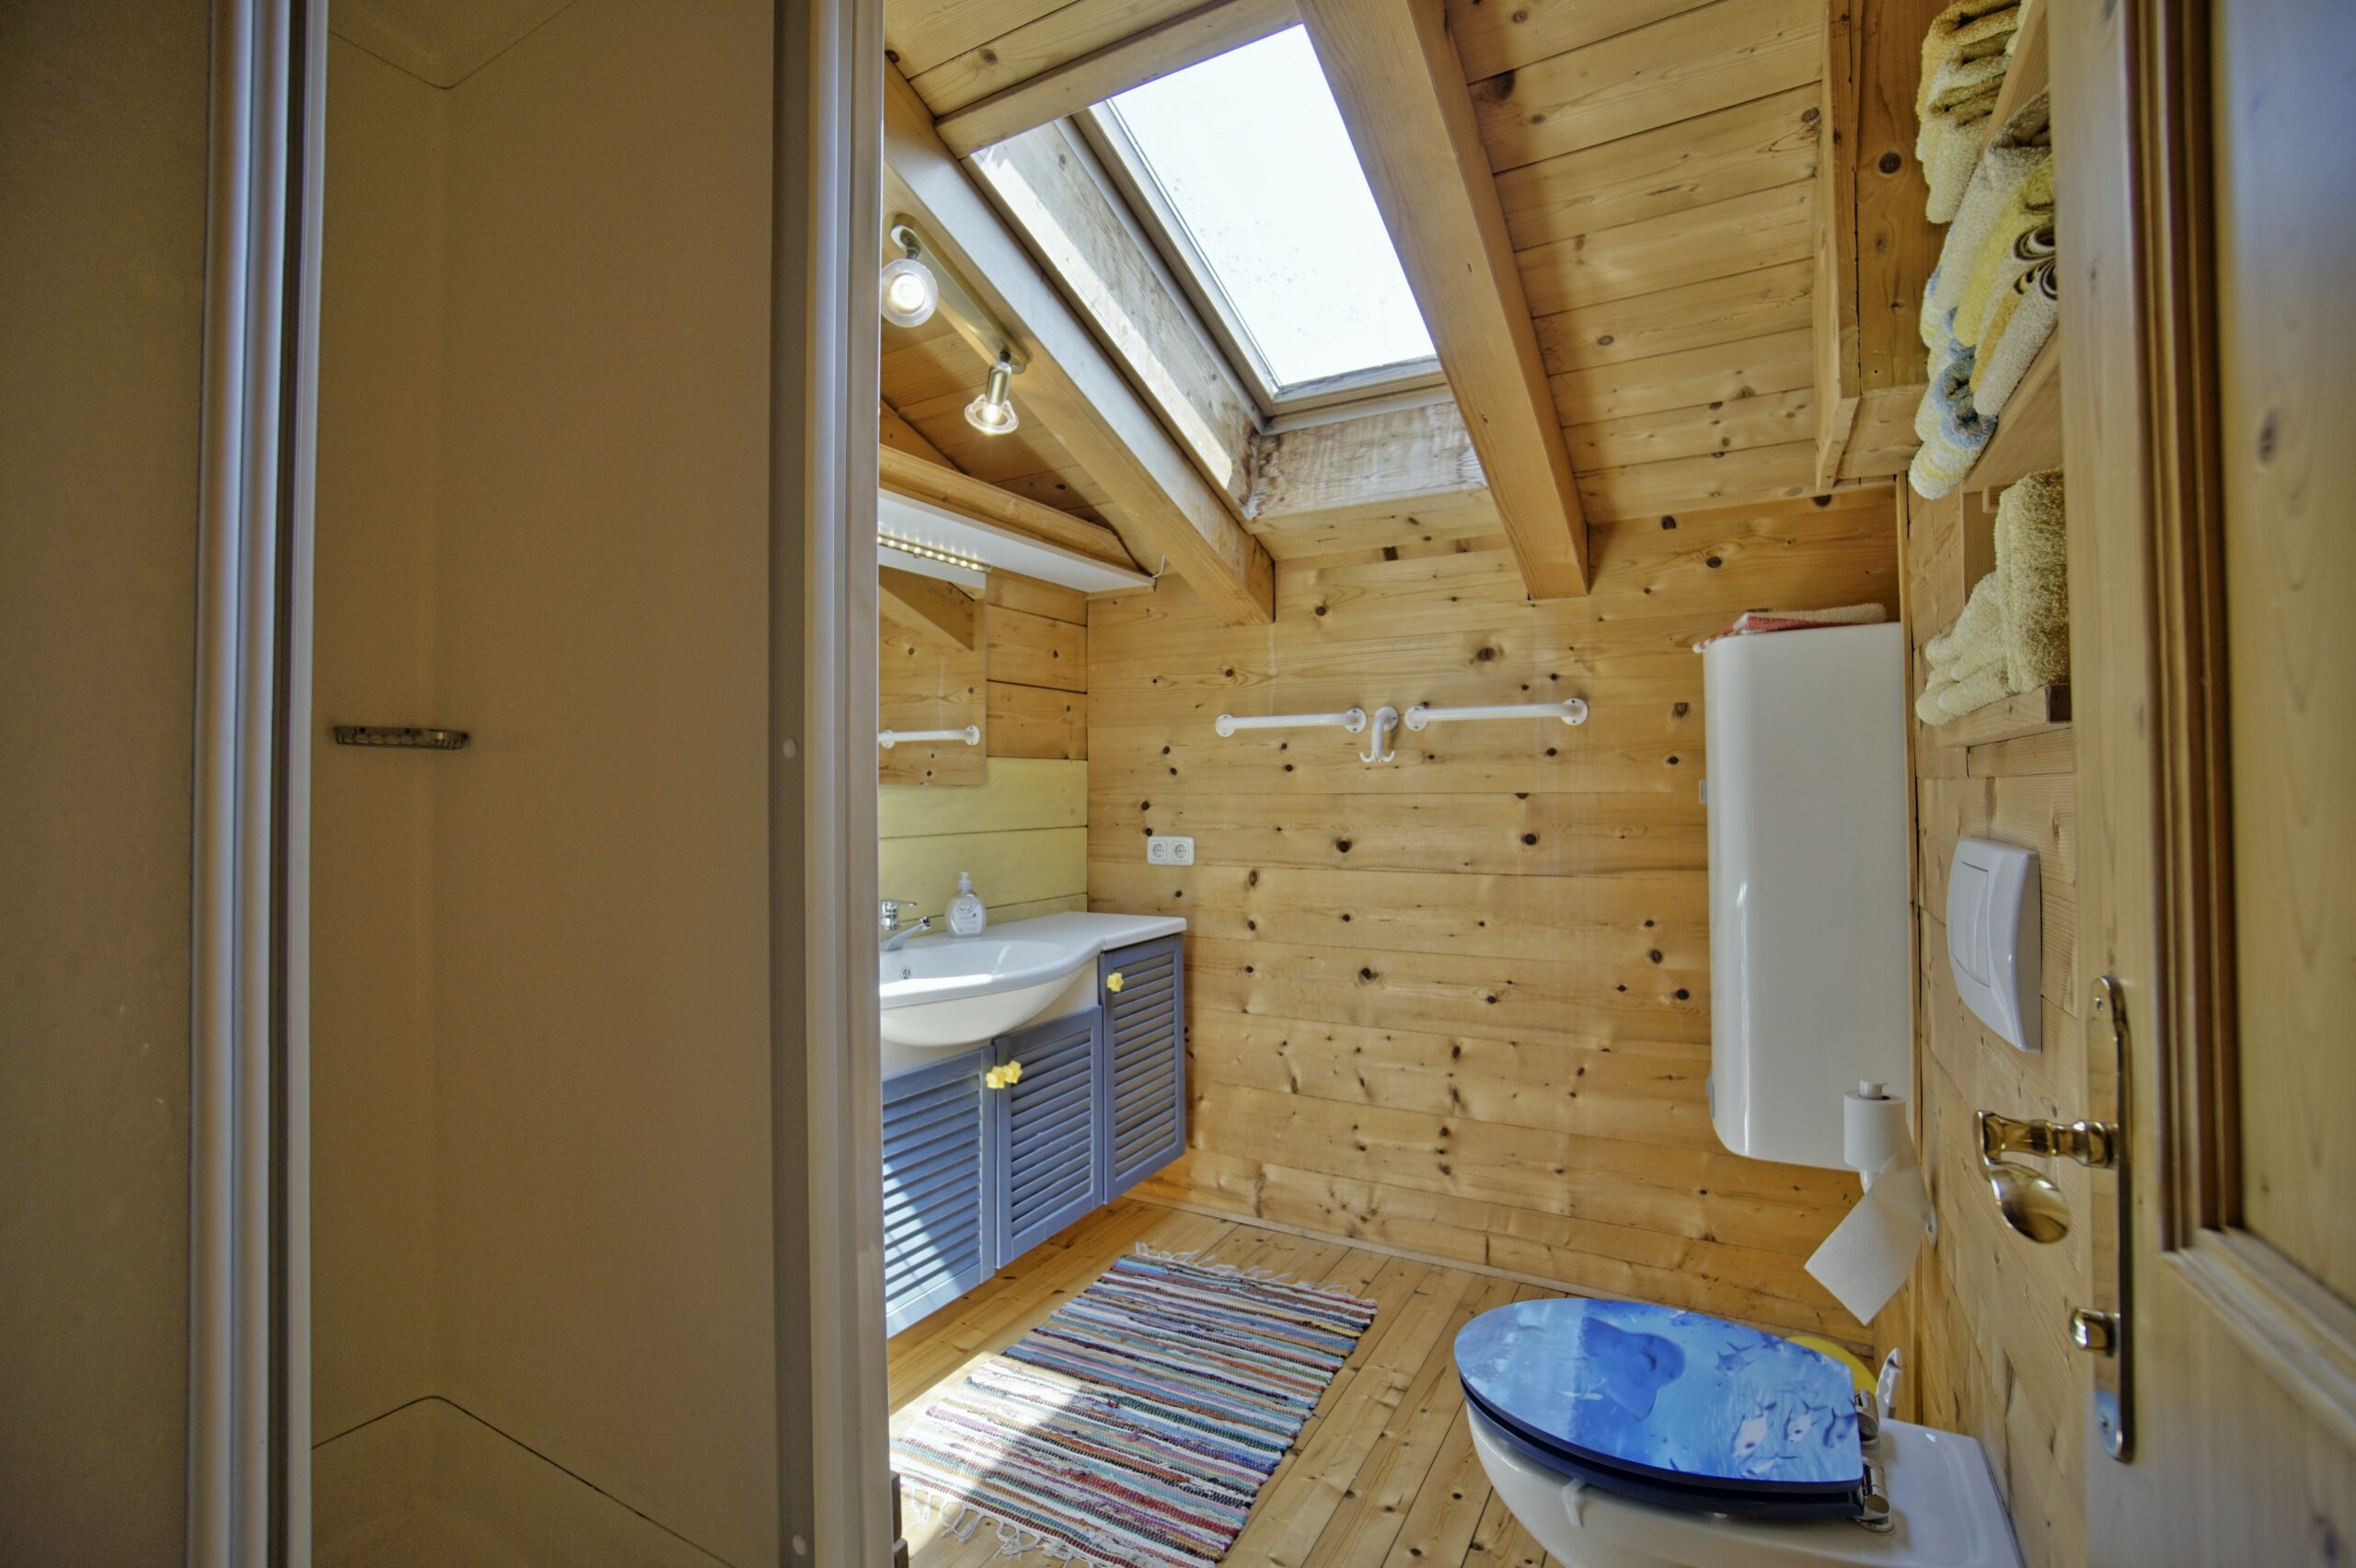 Badezimmer mit viel Holz und Dachfenster